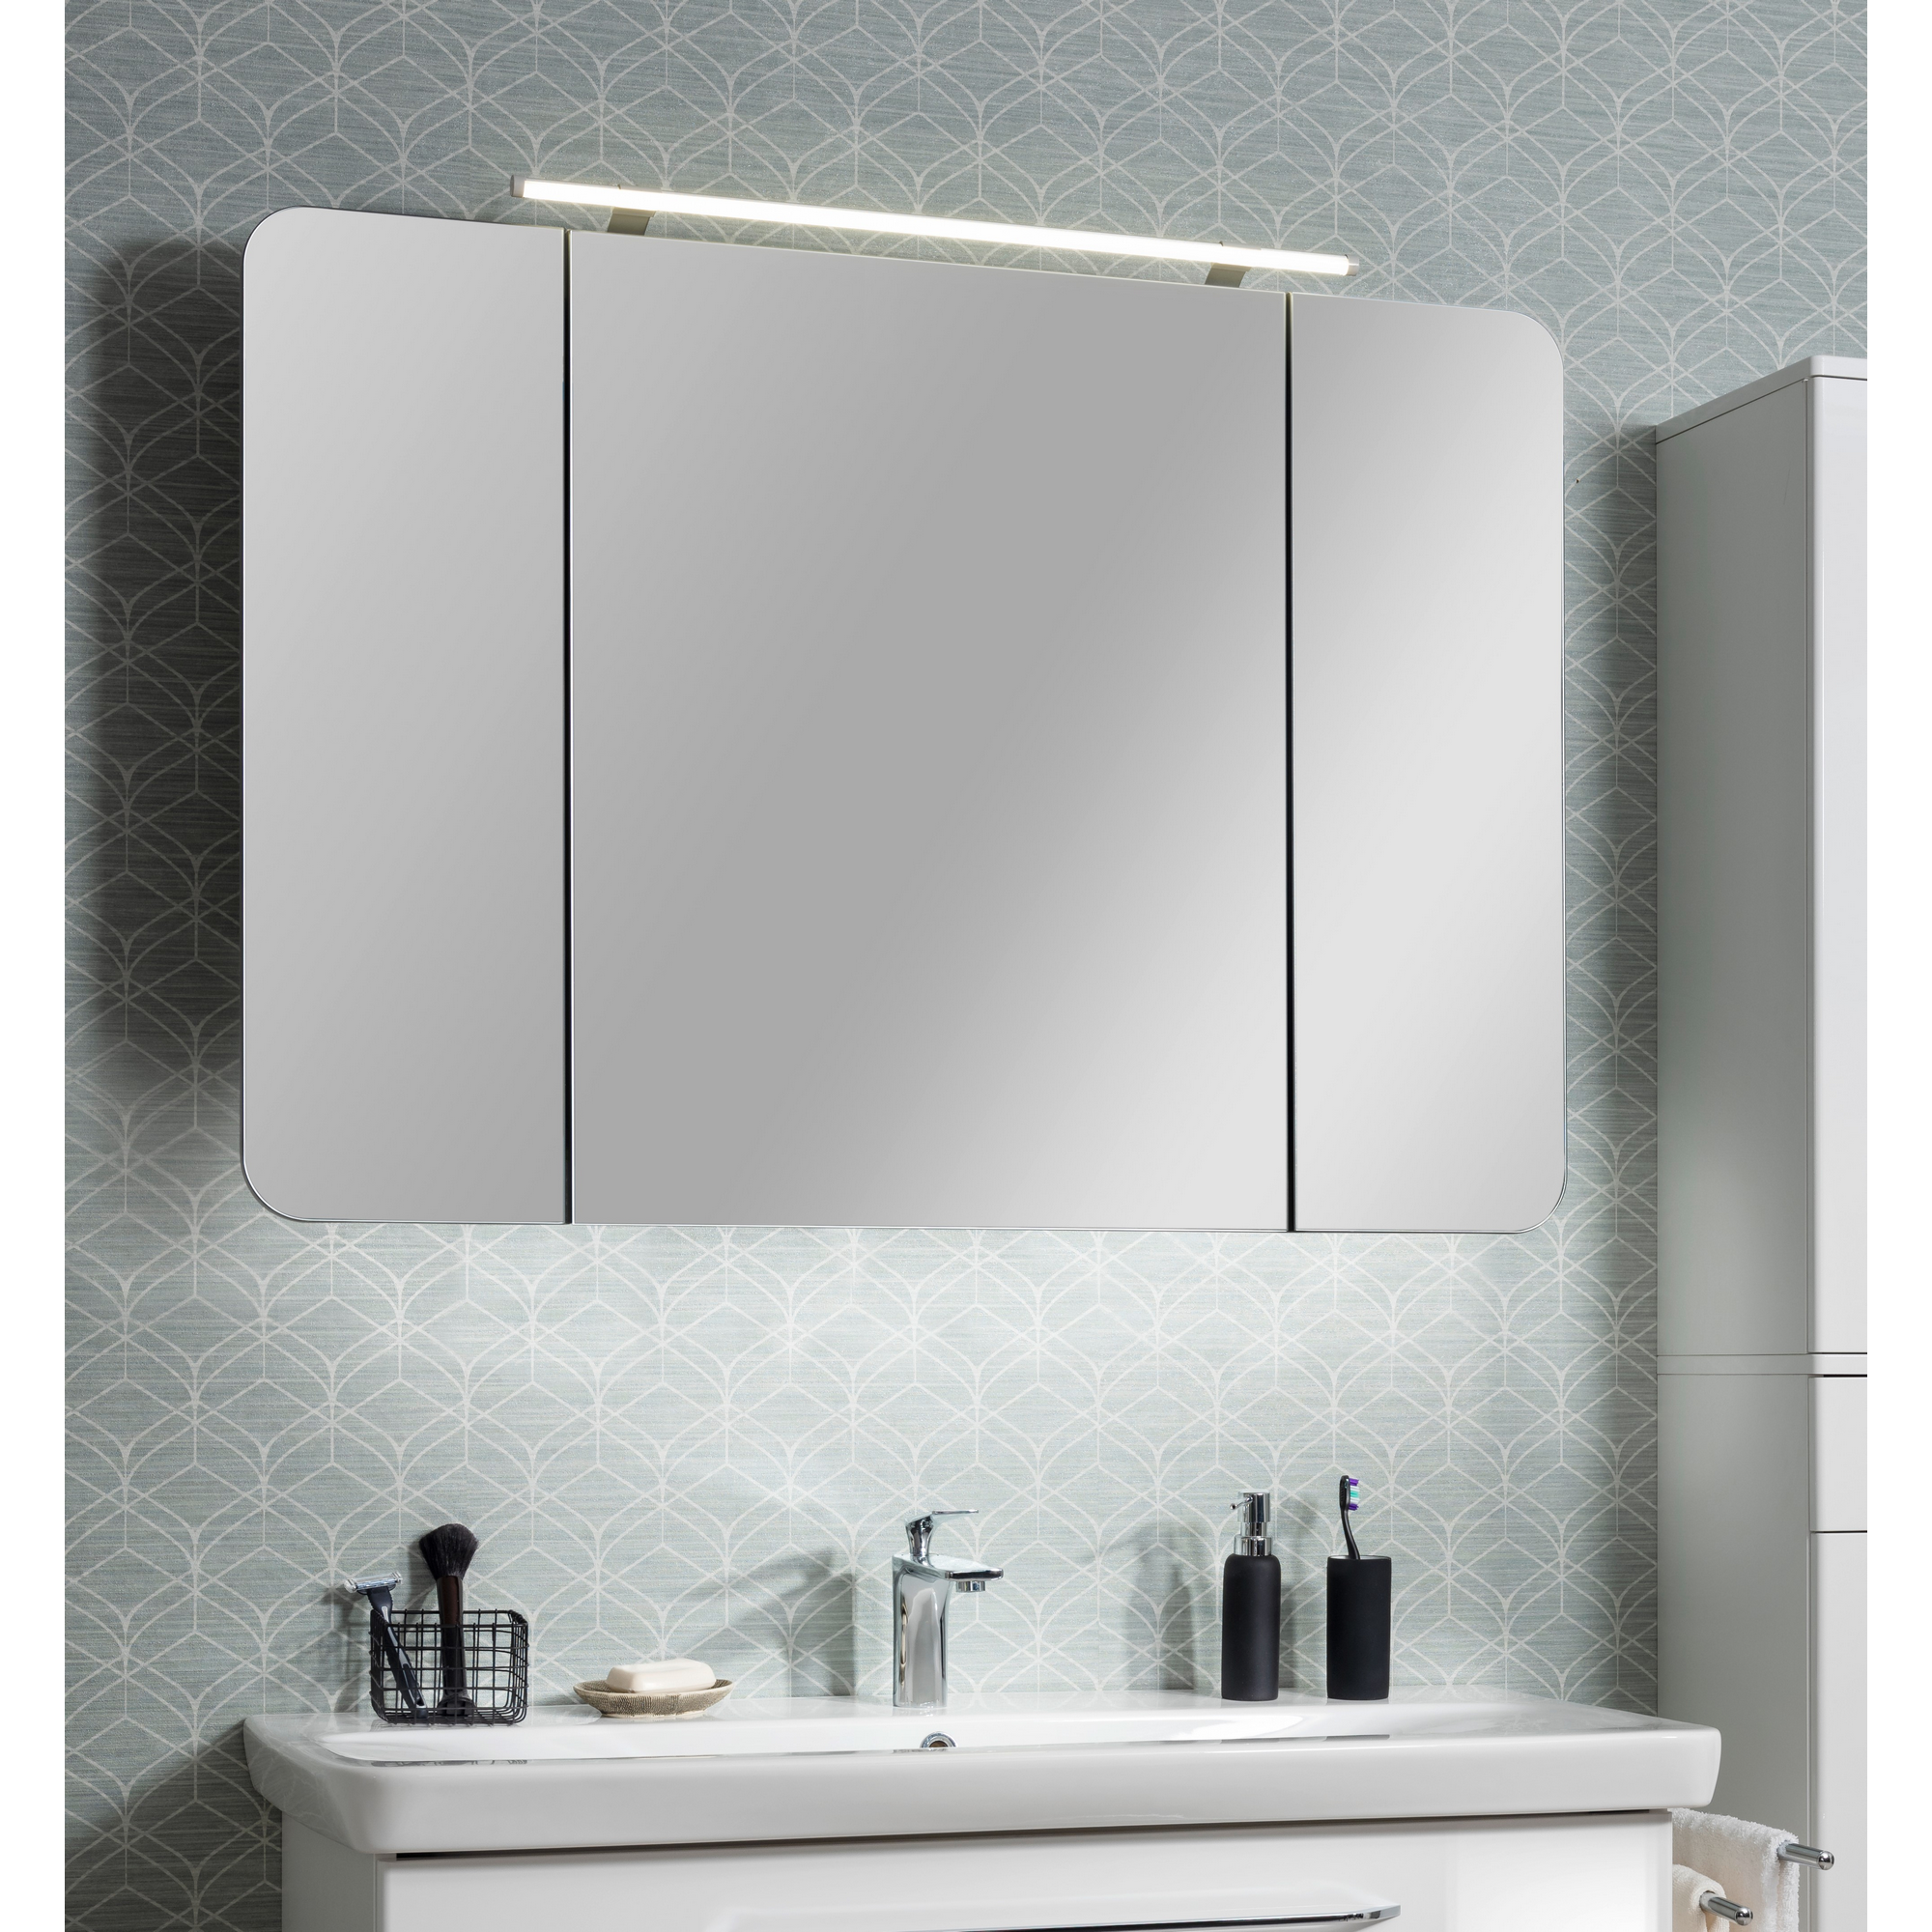 LED-Spiegelschrank 'Milano' weiß 109,9 x 78 x 15,8 cm